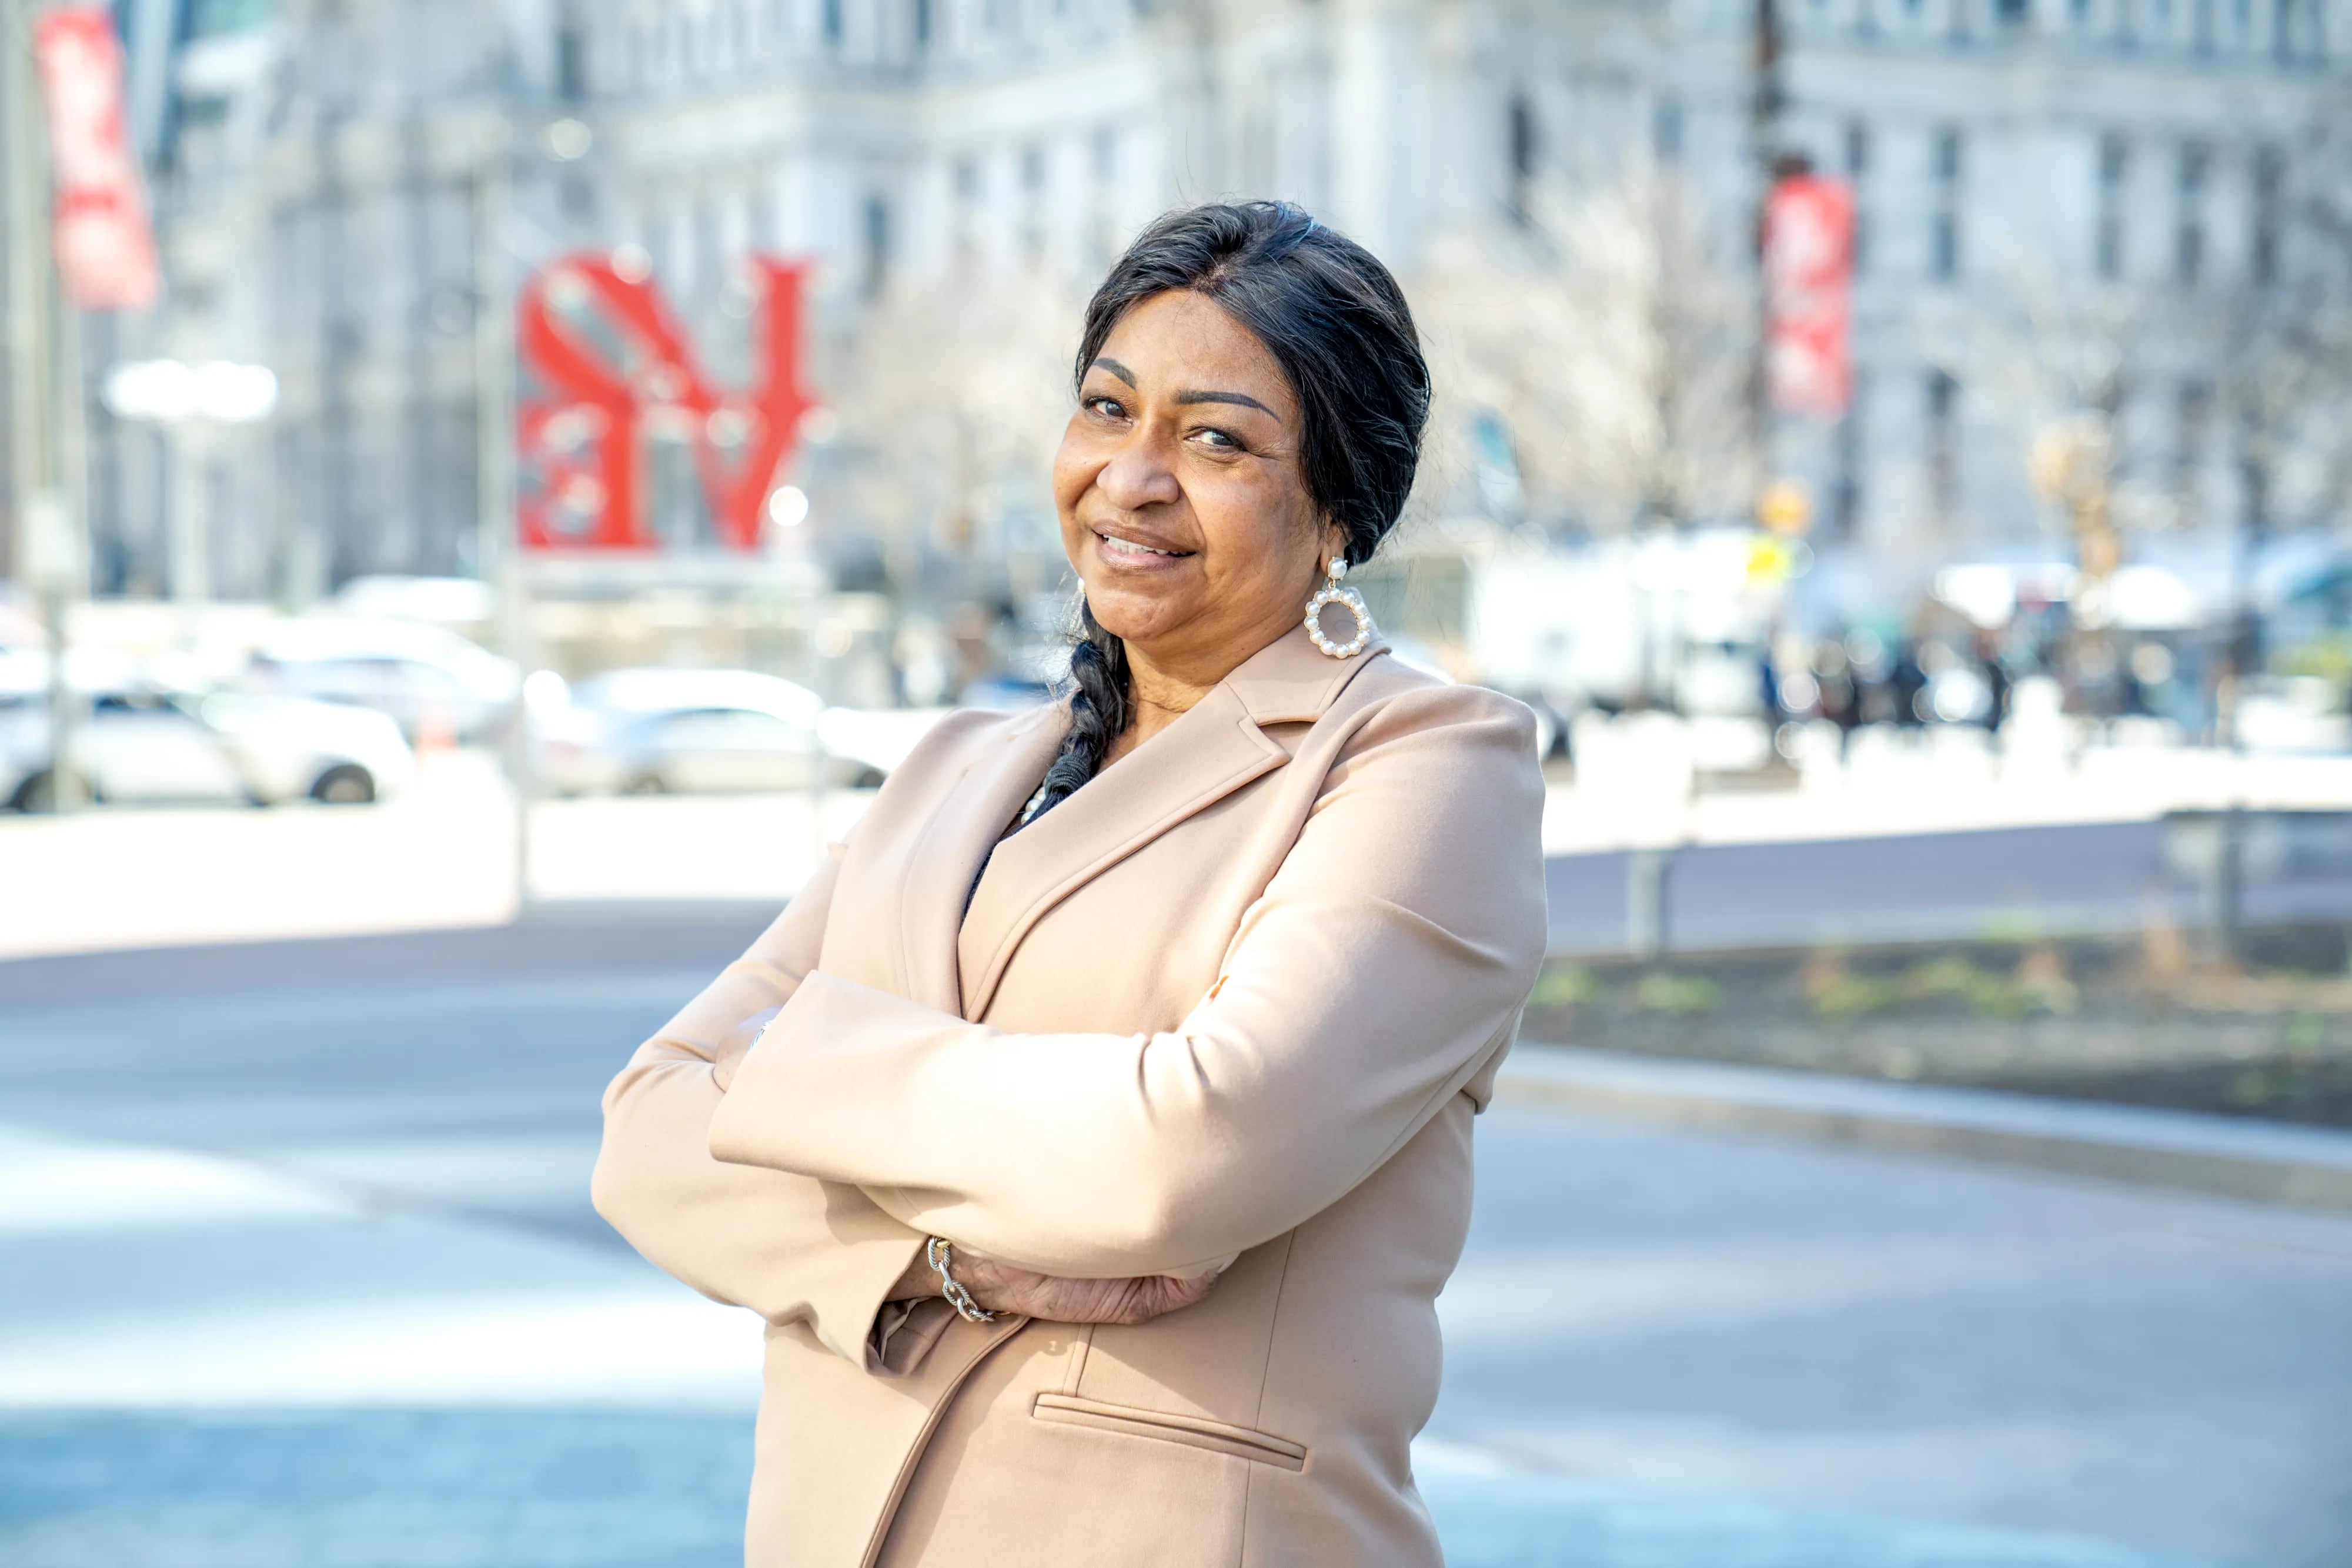 Philadelphia City Representative Jazelle Jones.